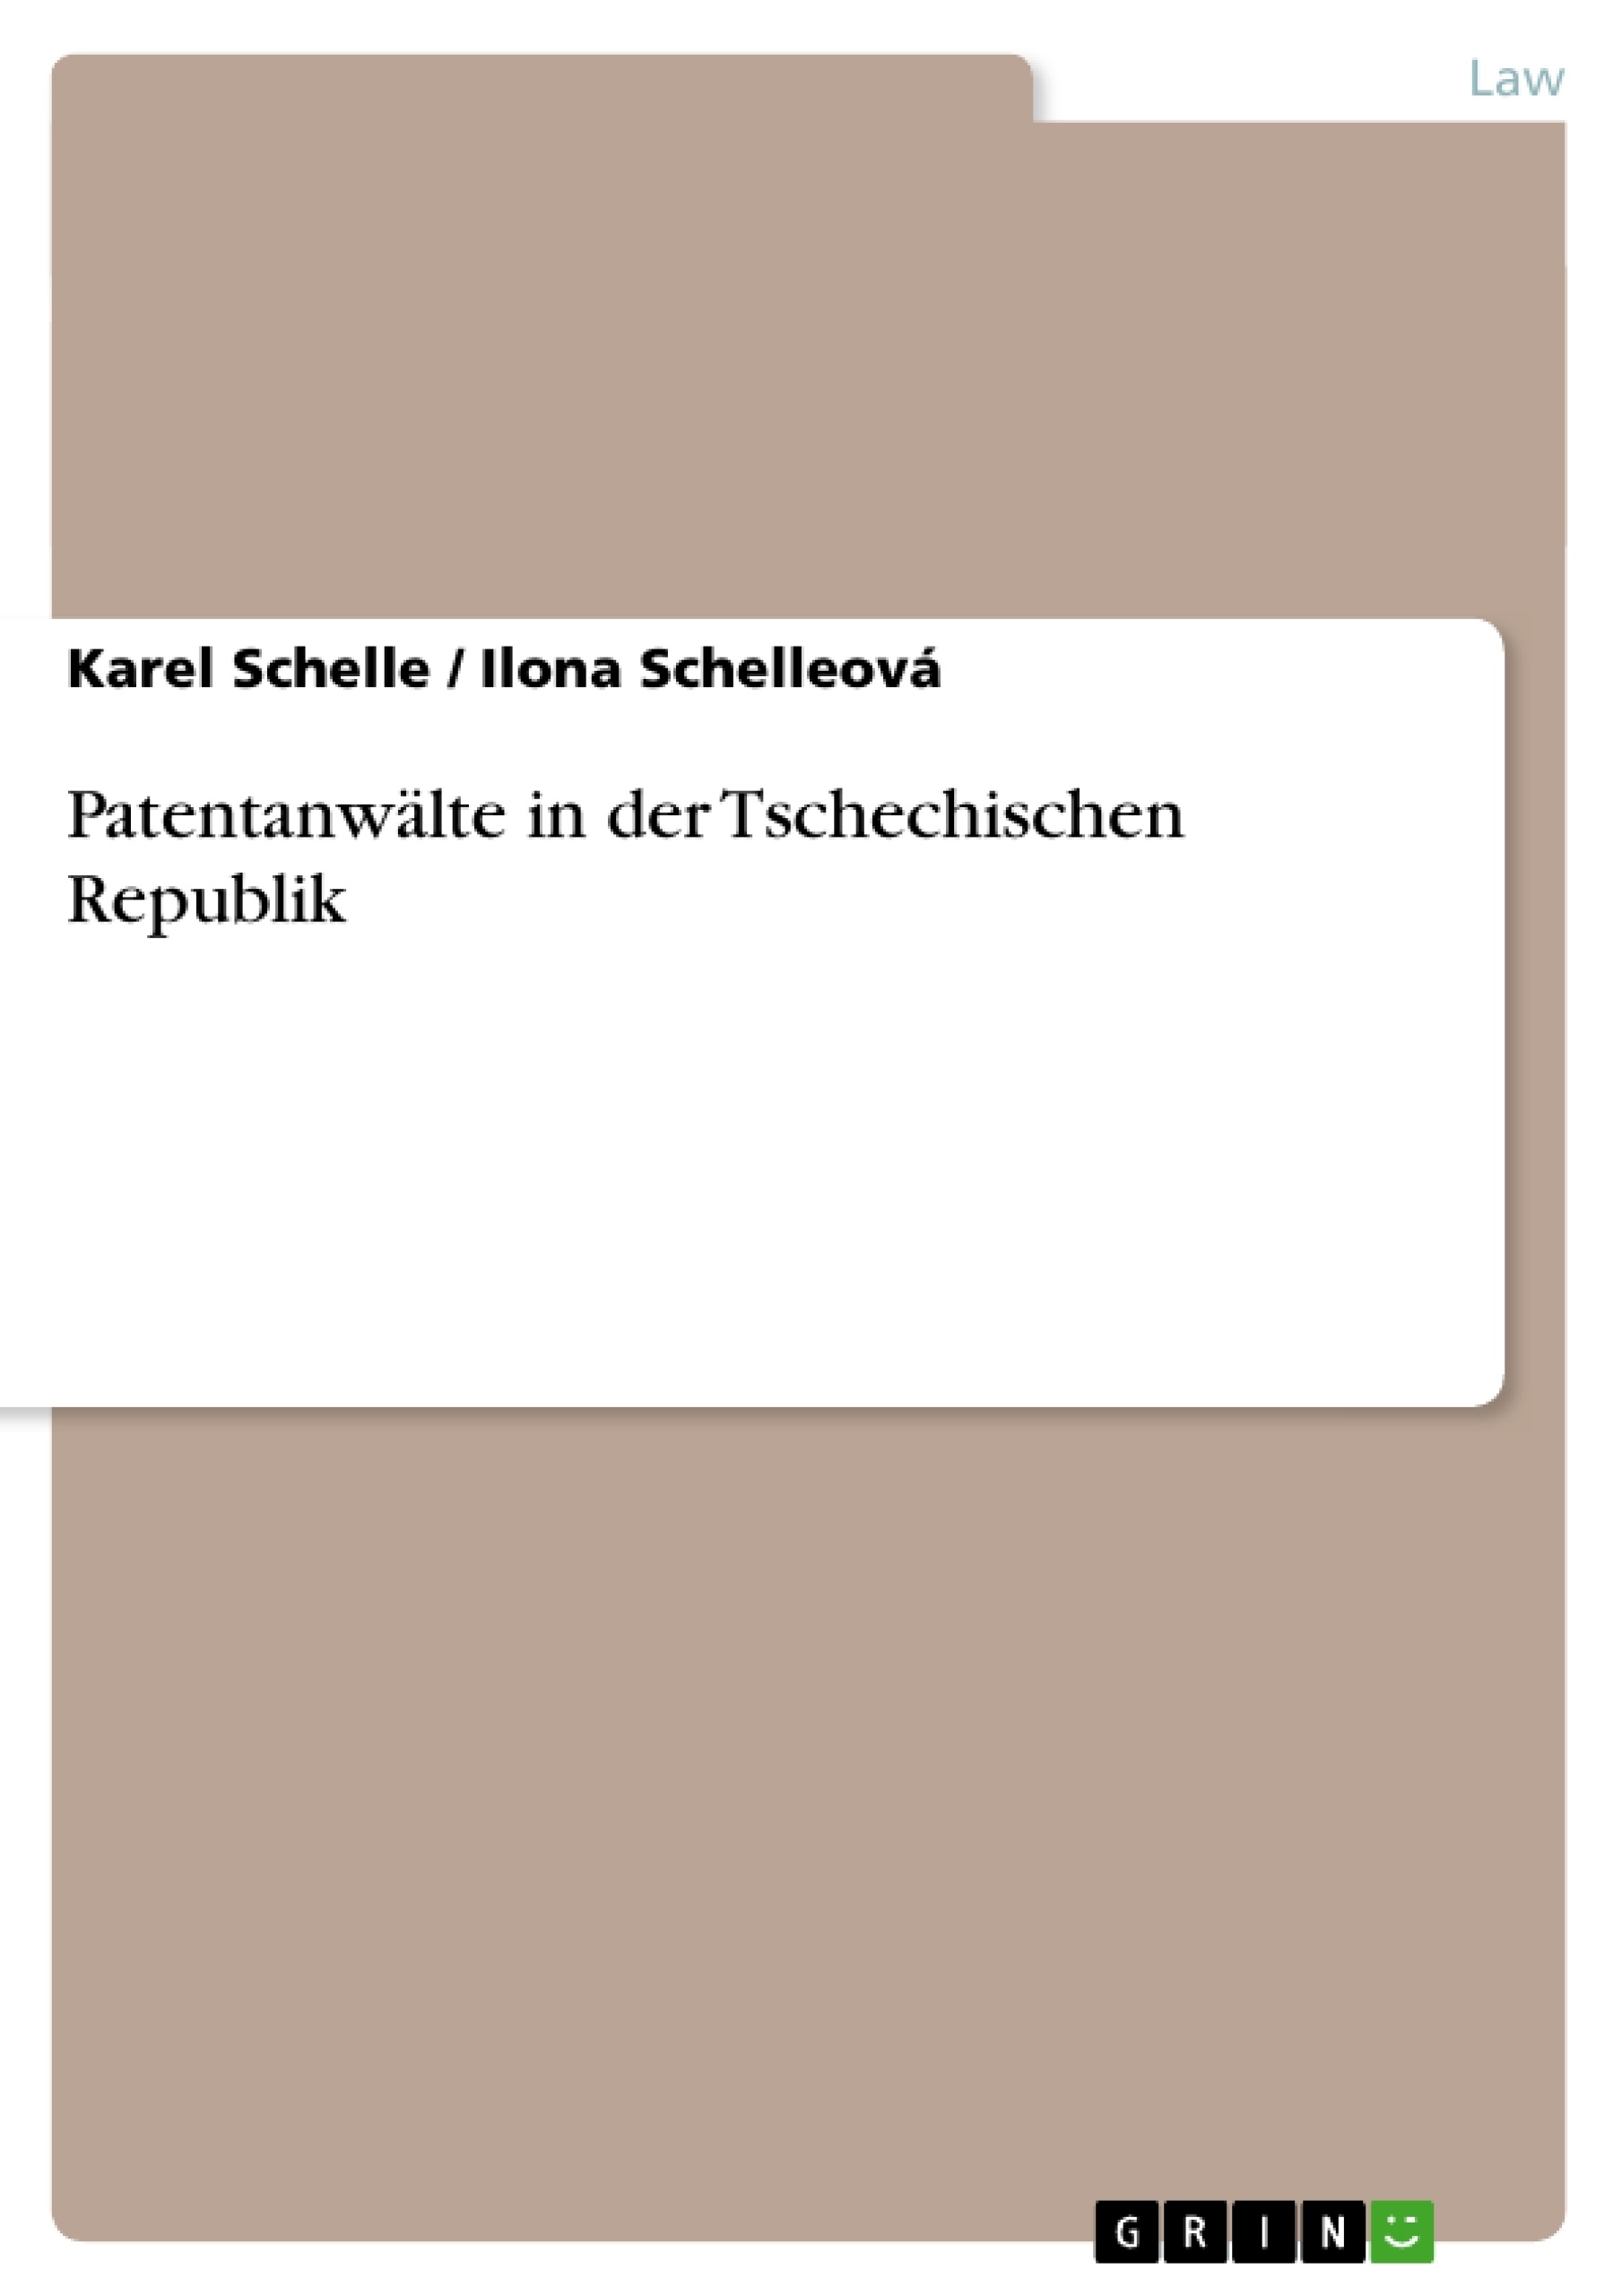 Título: Patentanwälte in der Tschechischen Republik